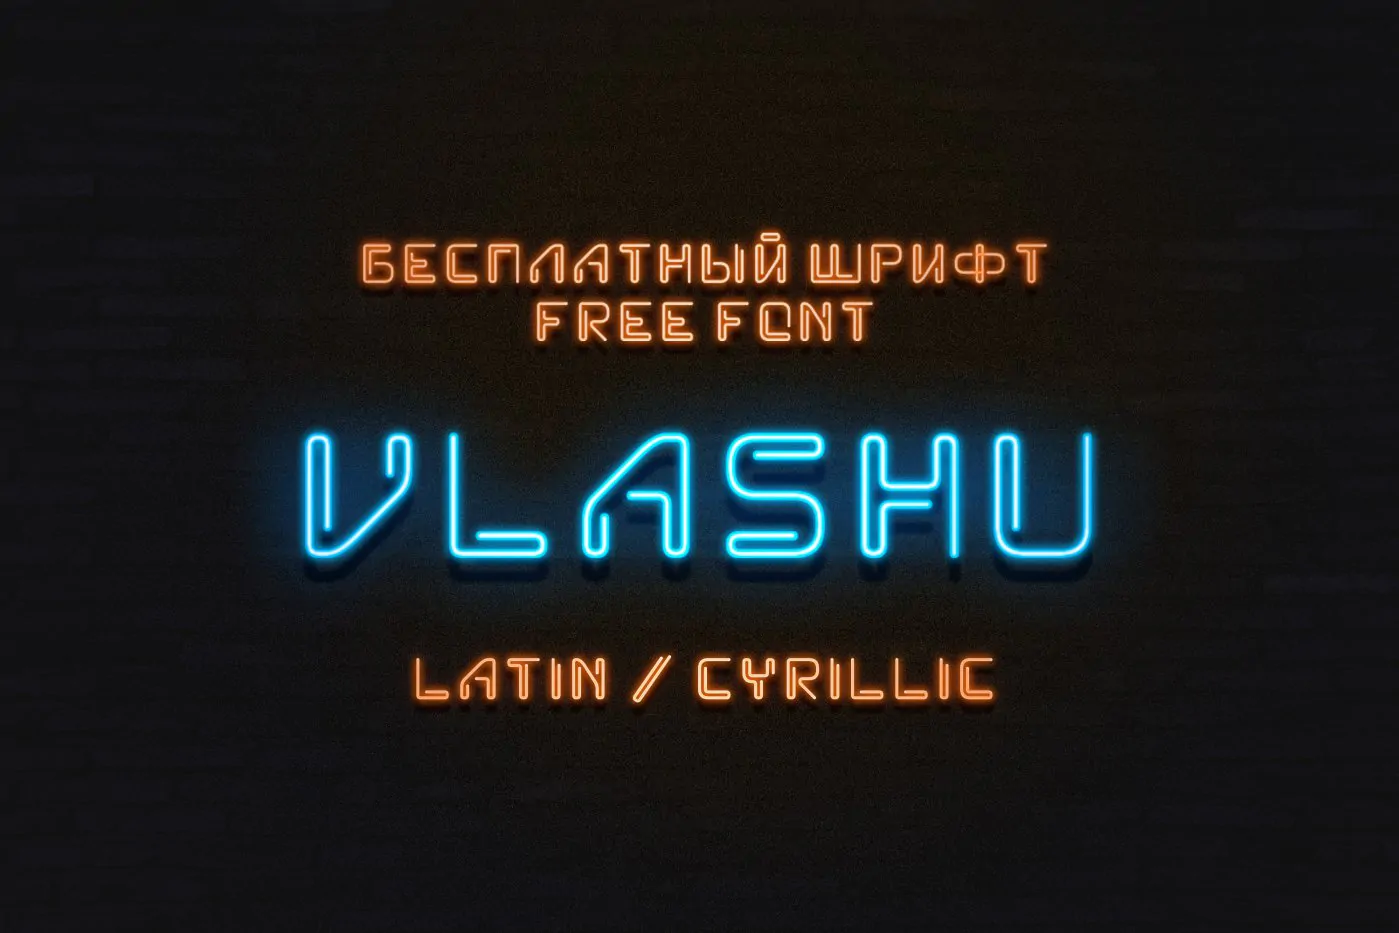 Шрифт Vlashu Cyrillic